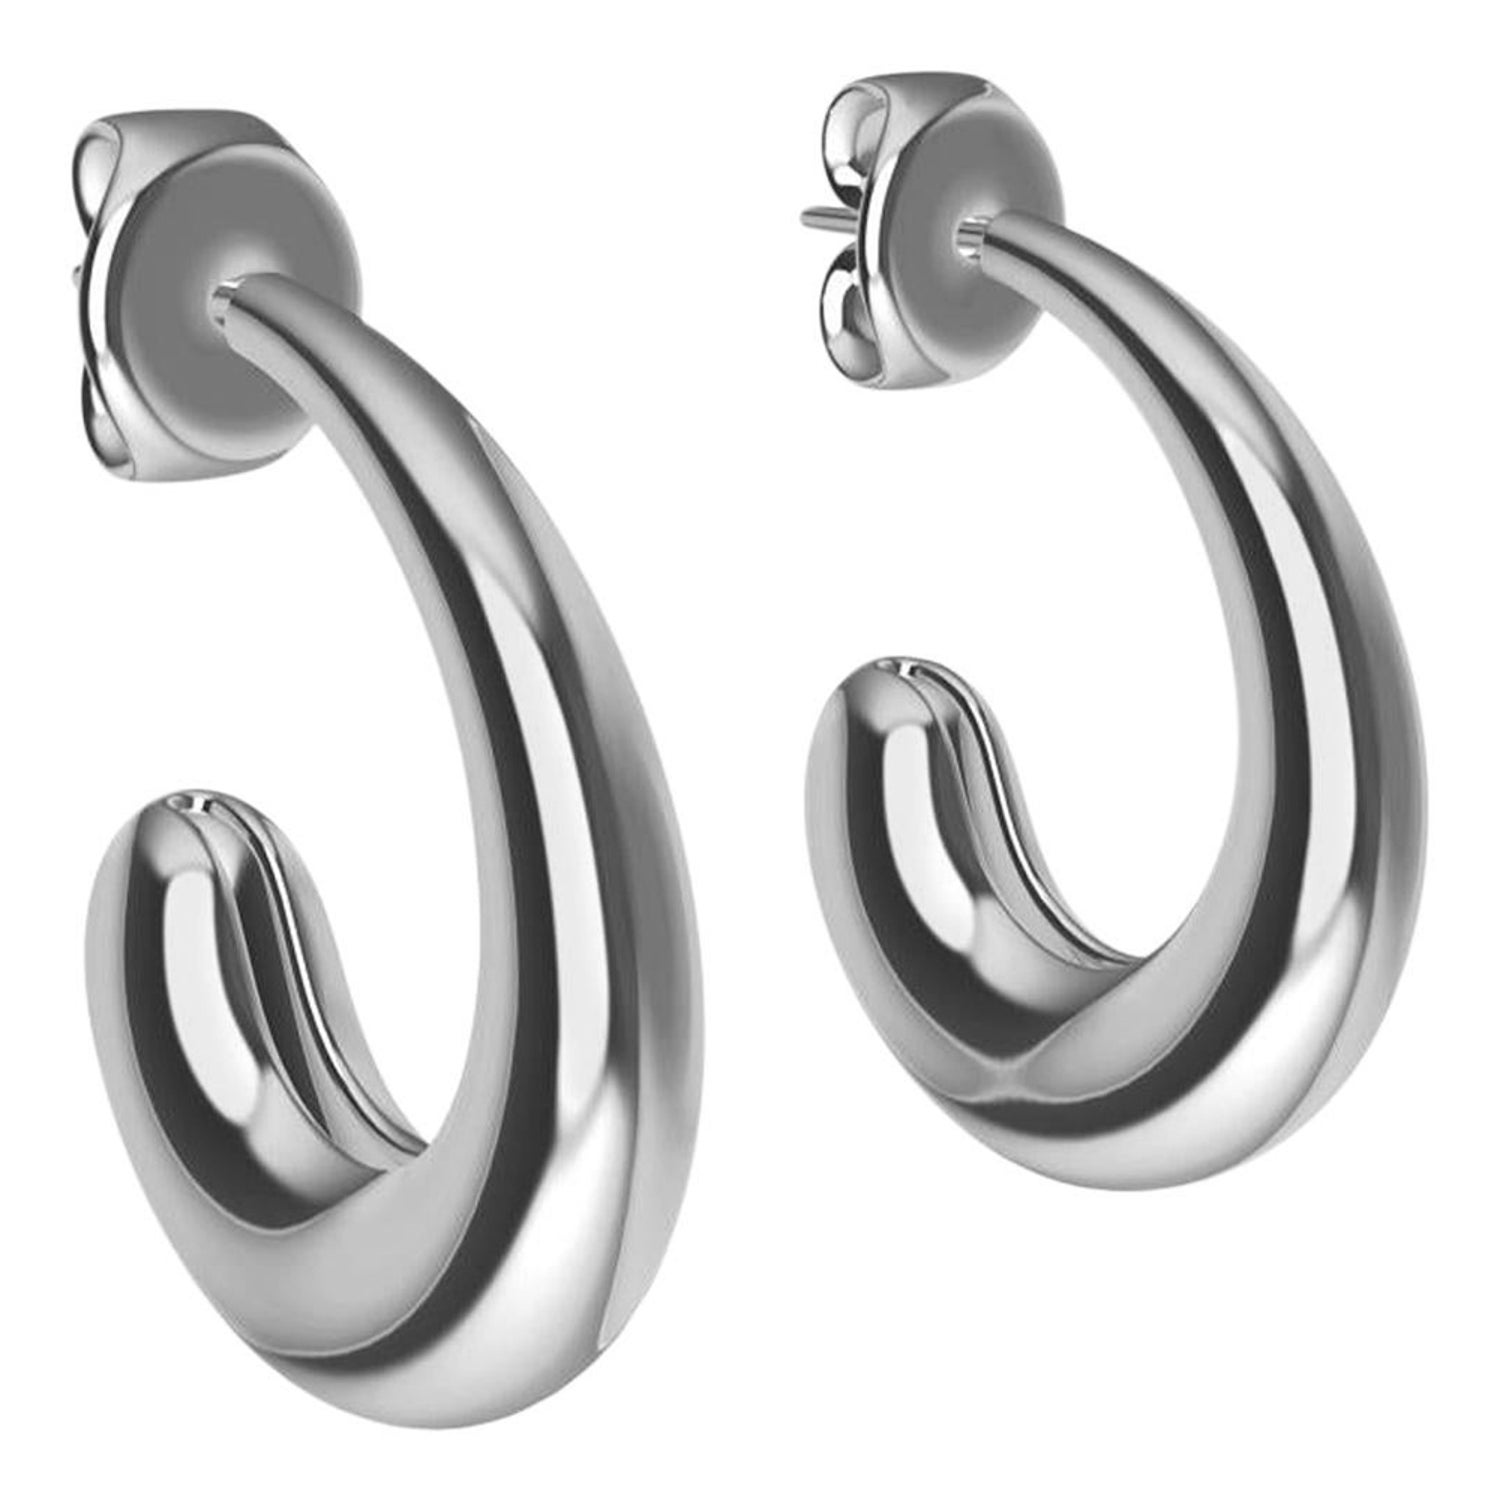 Sterling Silver C-Hoop Teardrop Earrings